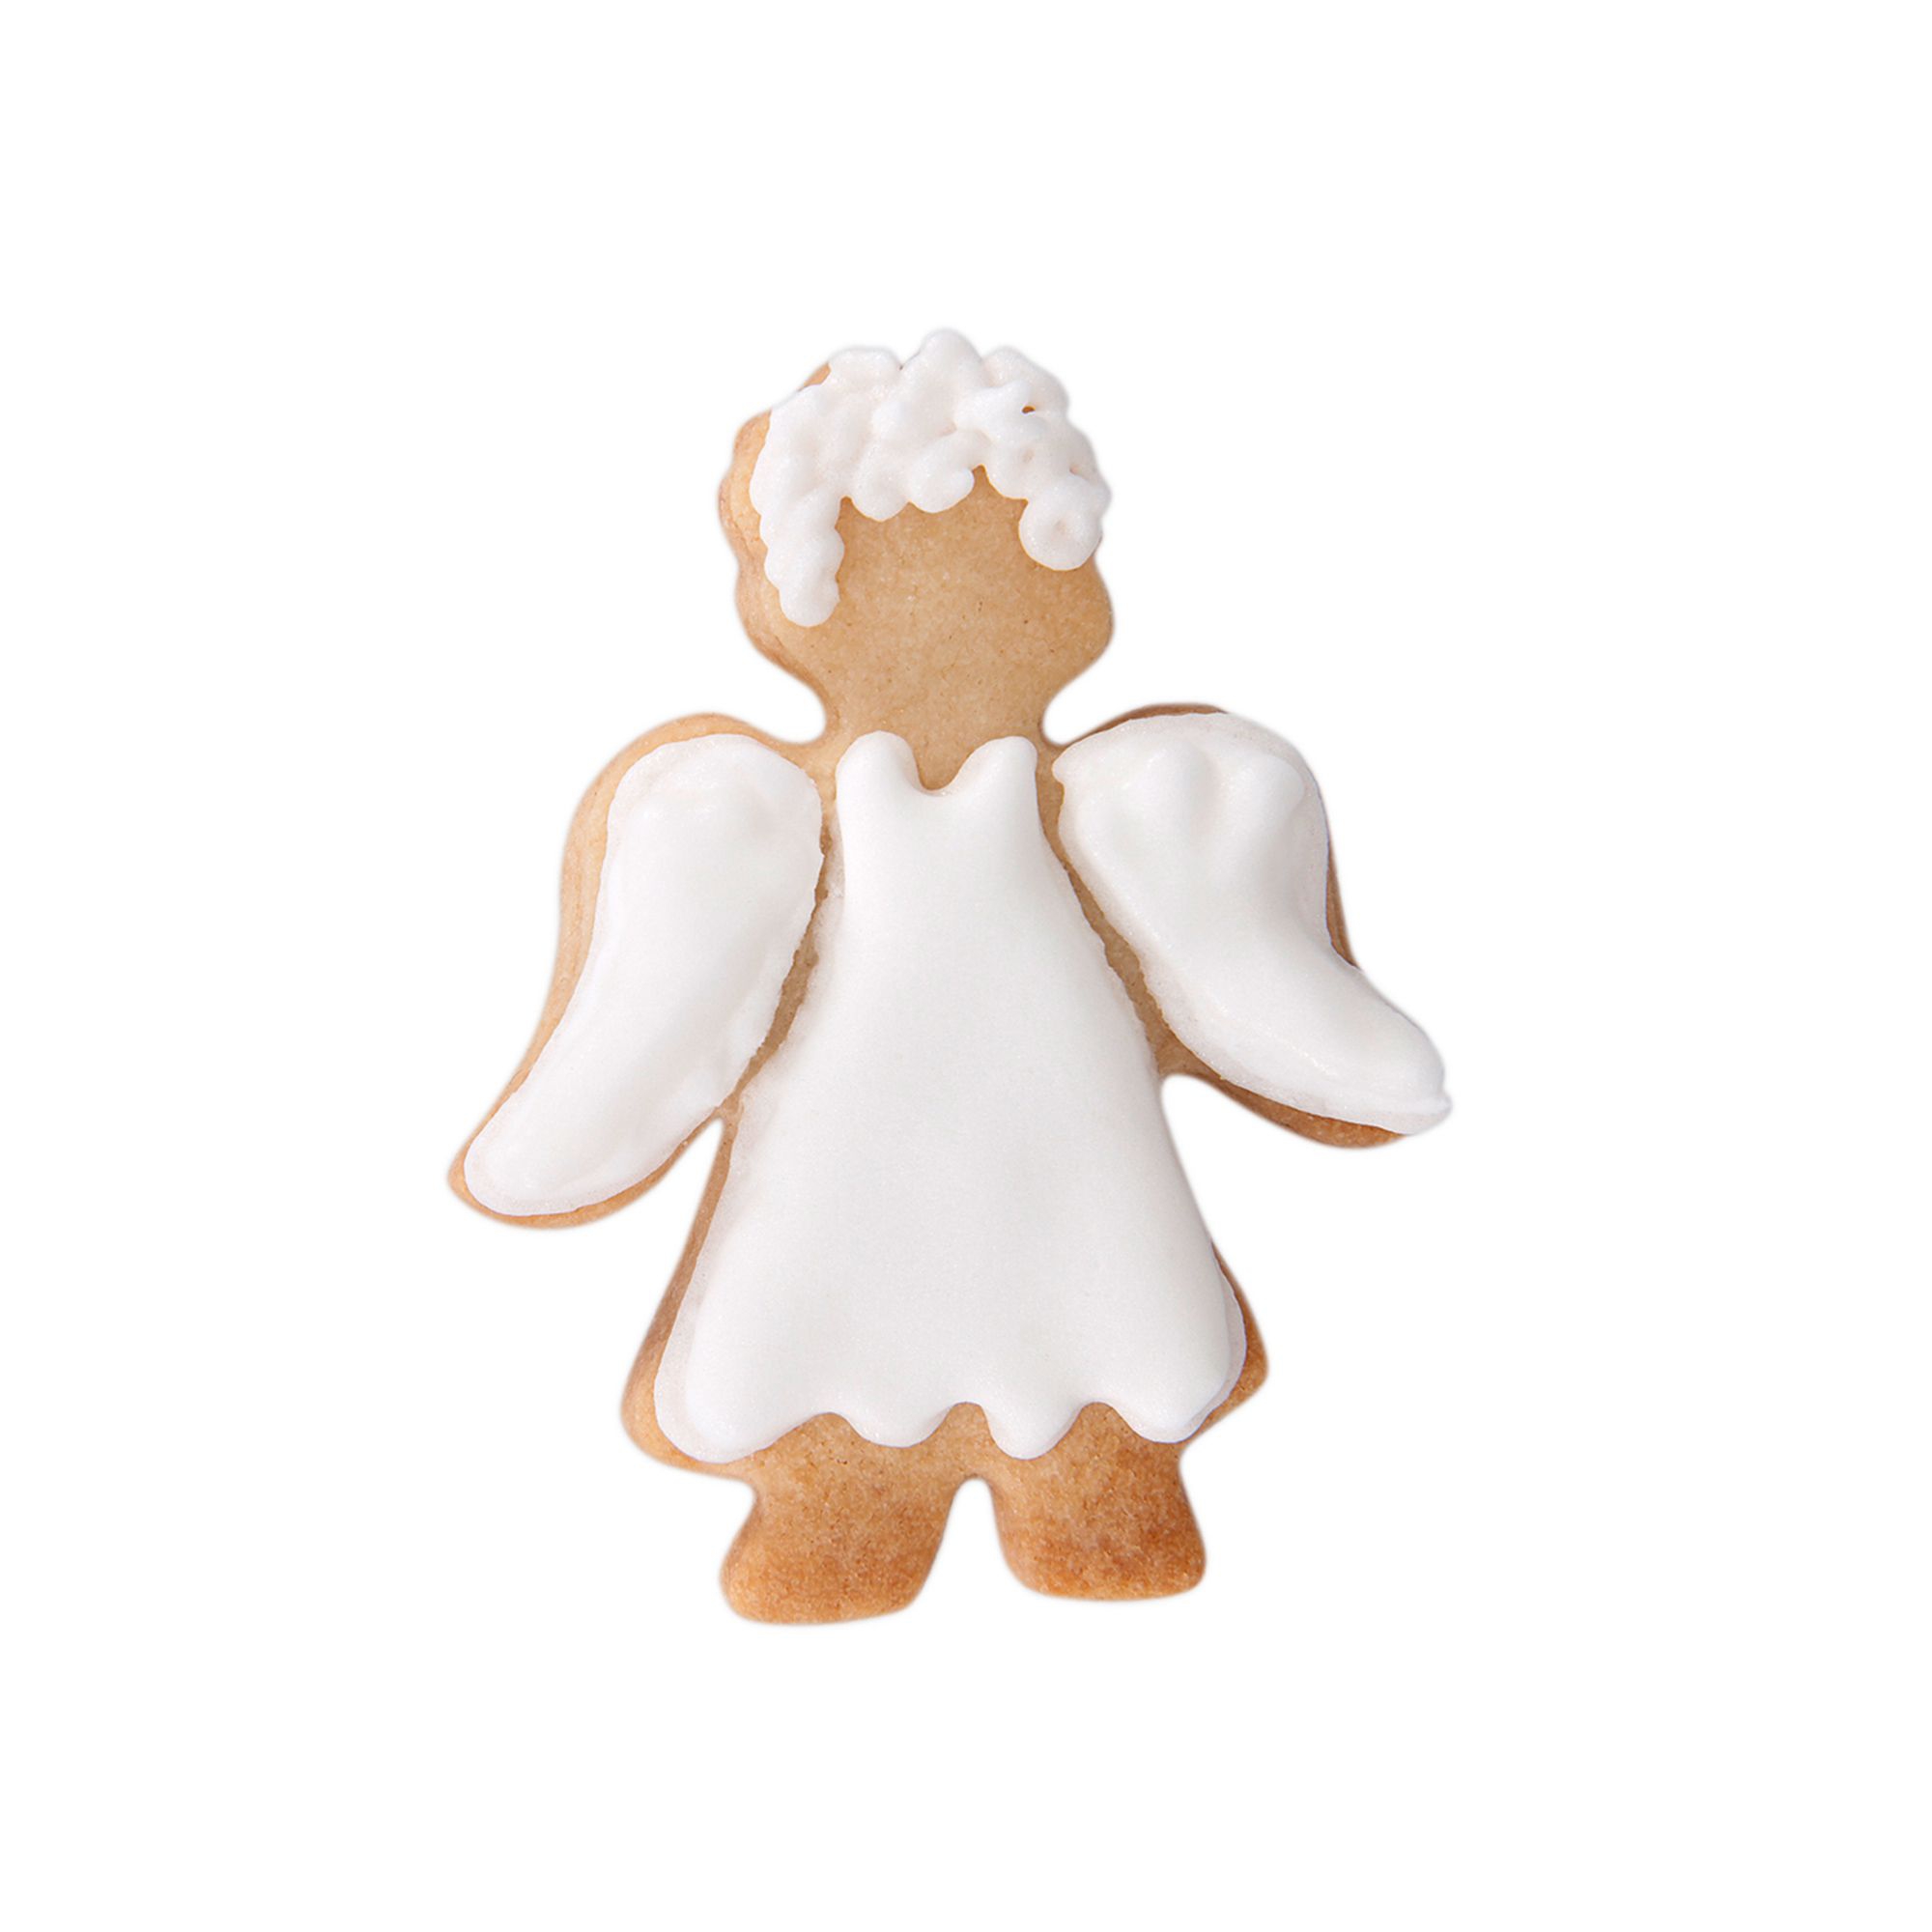 Städter - cookie cutter angel - 6cm